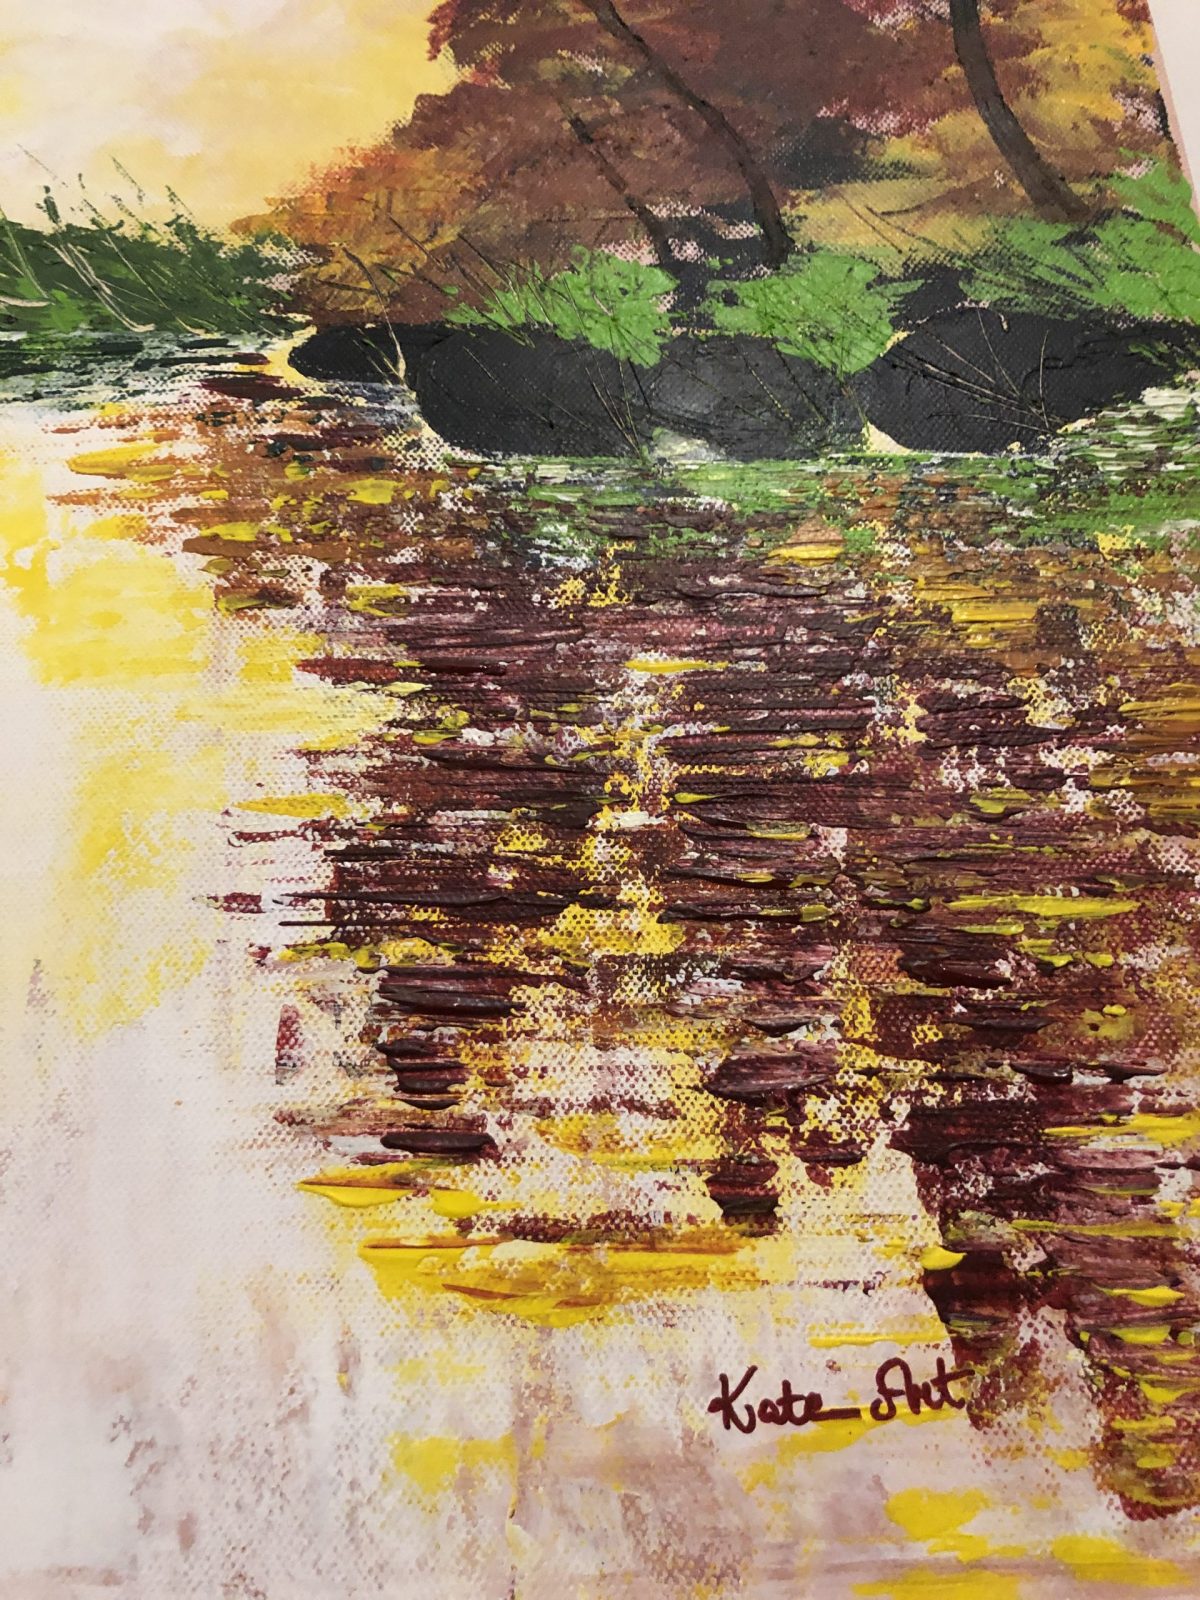 L'automne doré au lac de Kate_Art, gros plan côté droite bas du tableau